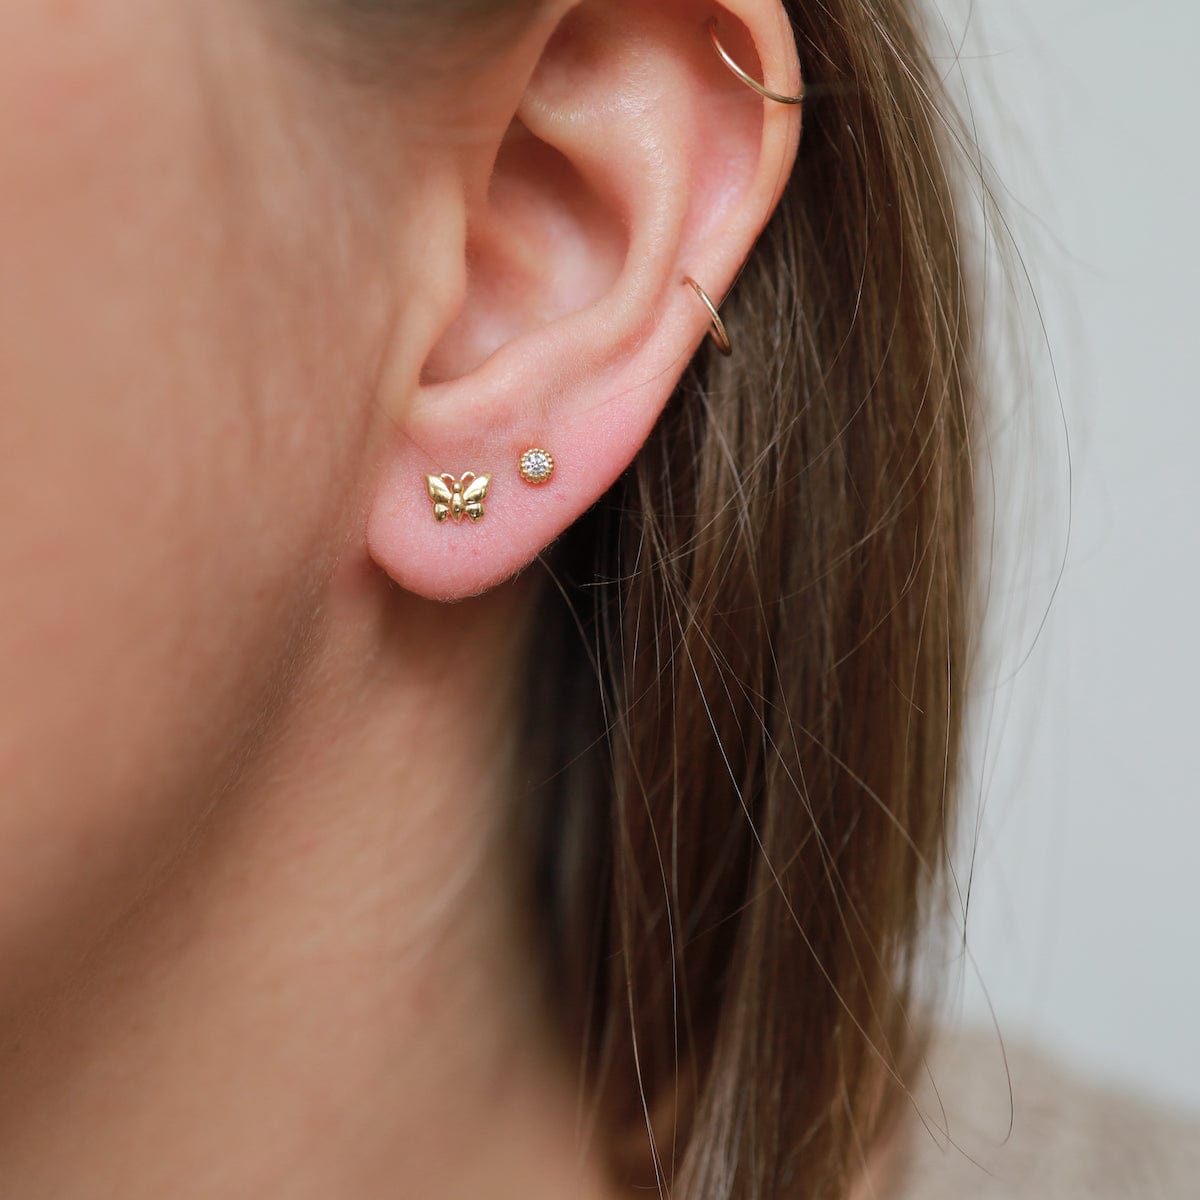 EAR-VRM Tiny Butterfly Stud Earring - Gold Vermeil